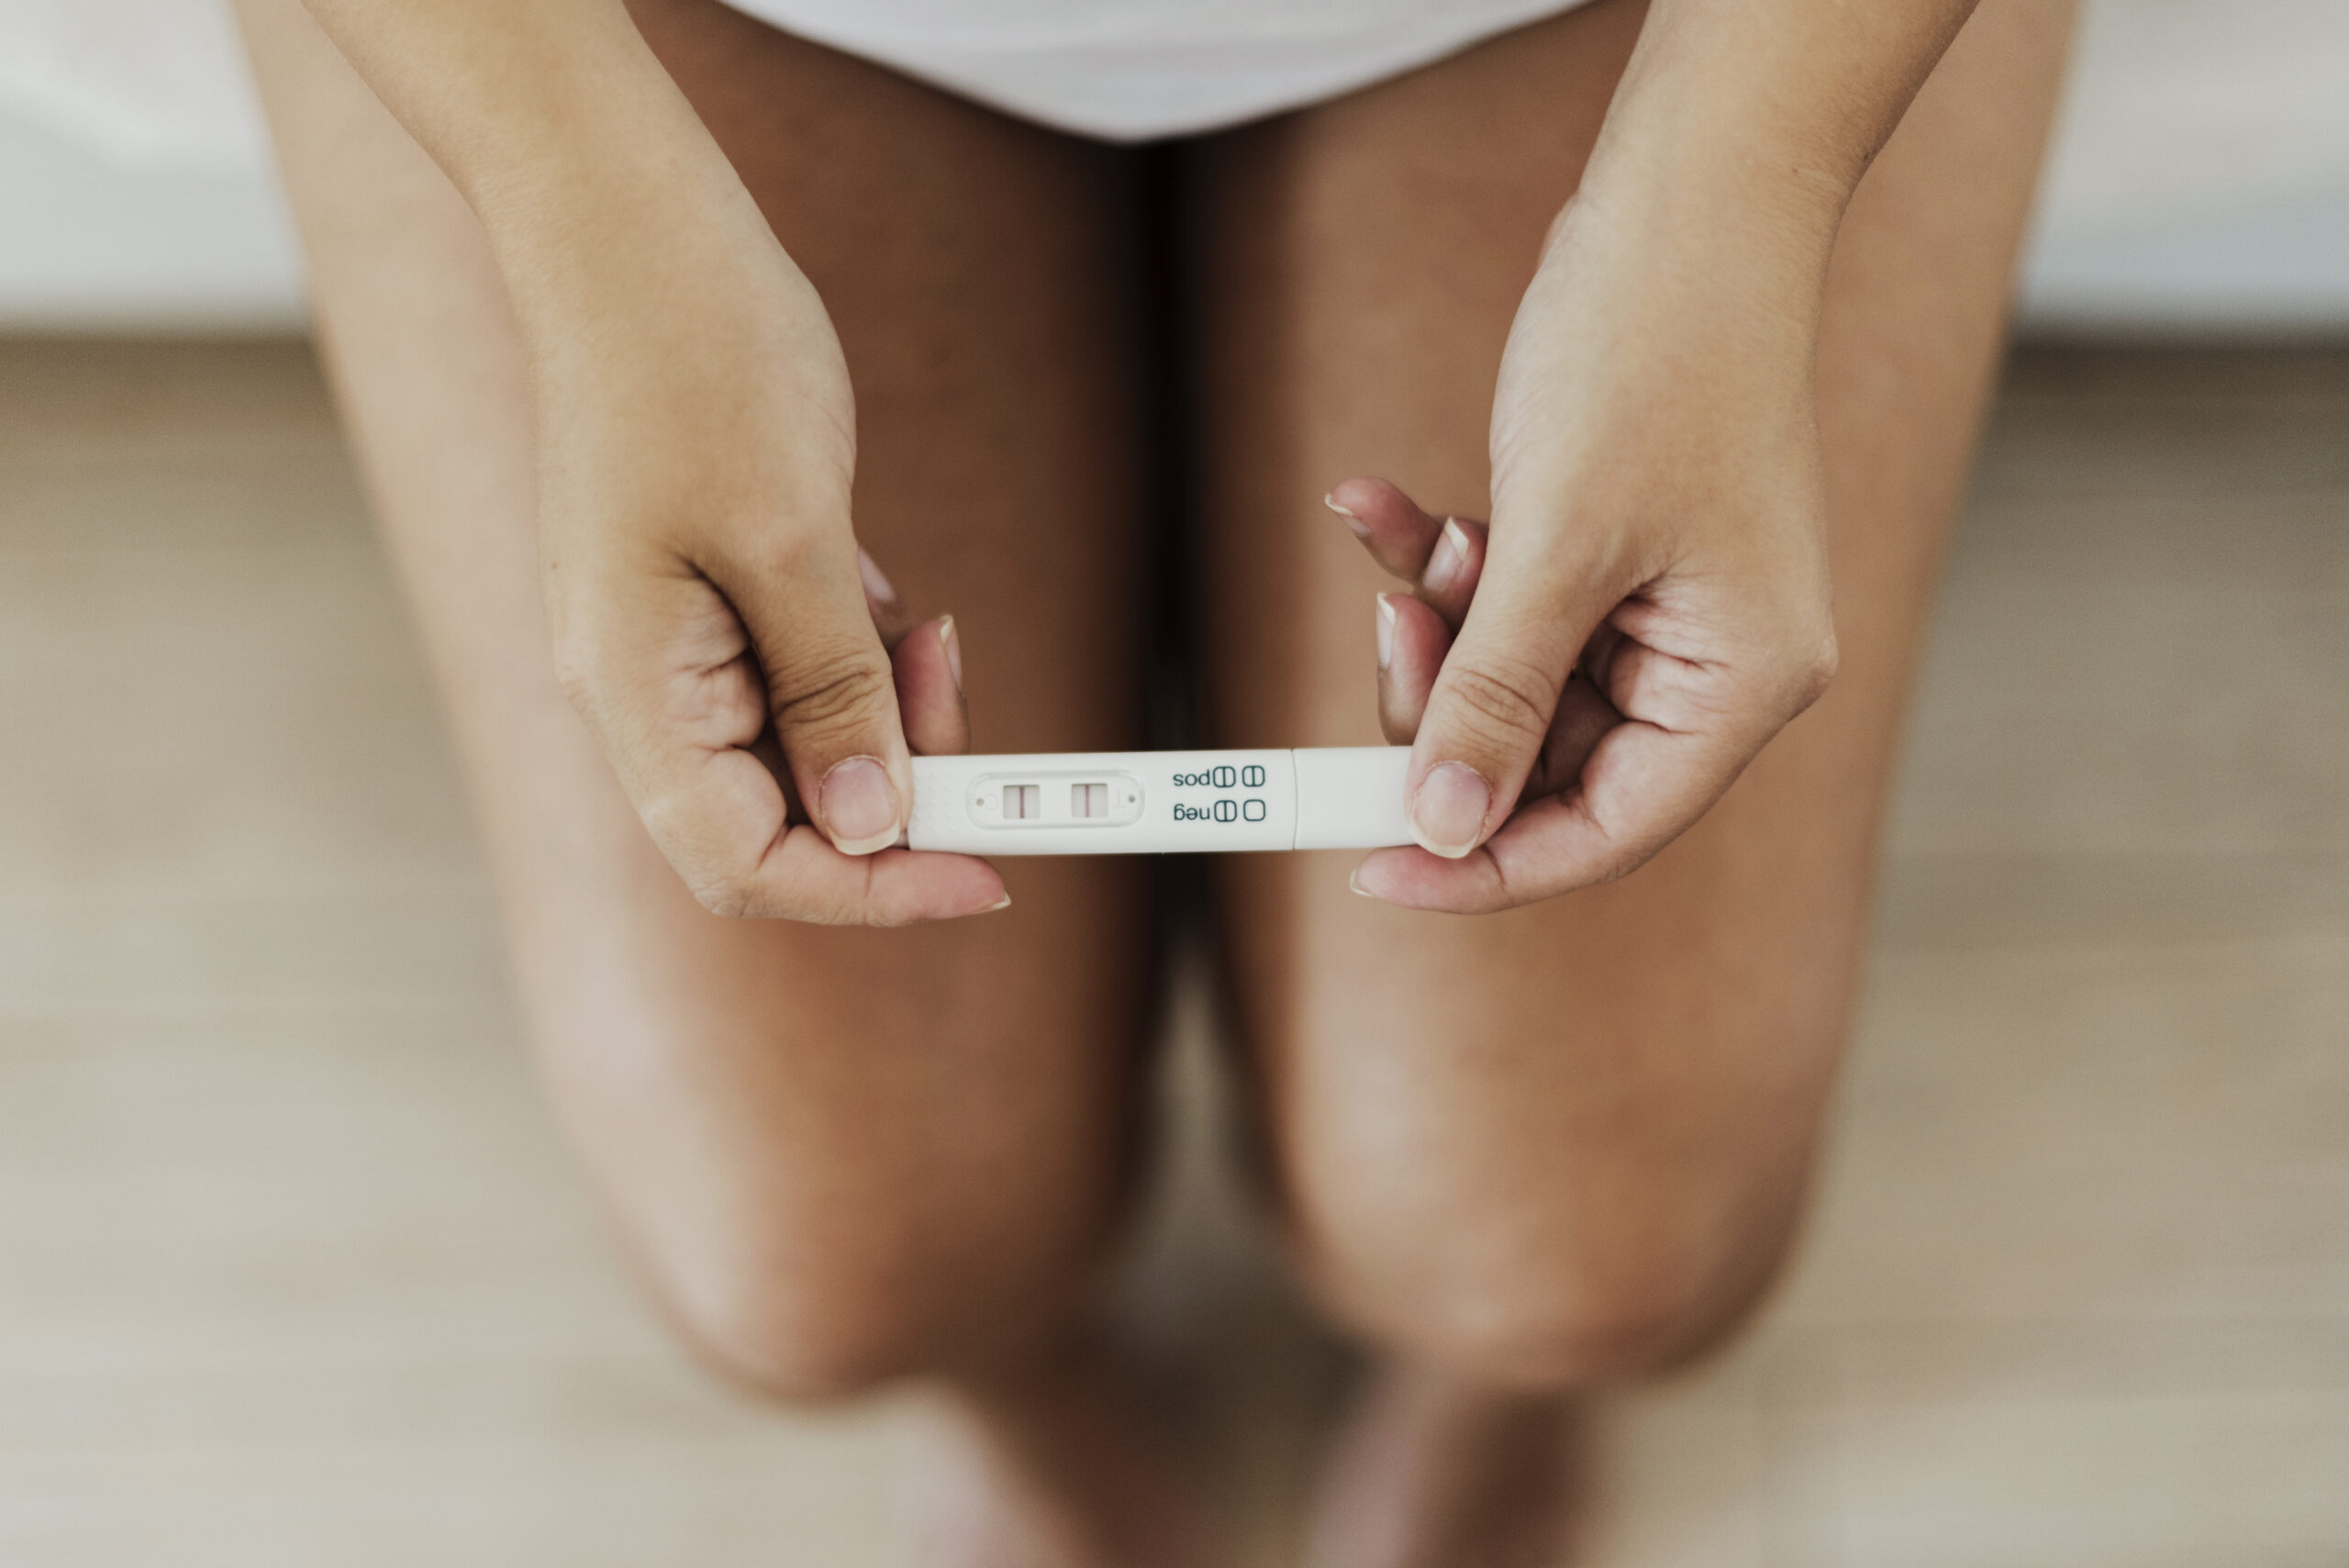 Sexualité : Nouveau site pour de l'information fiable sur l'IVG